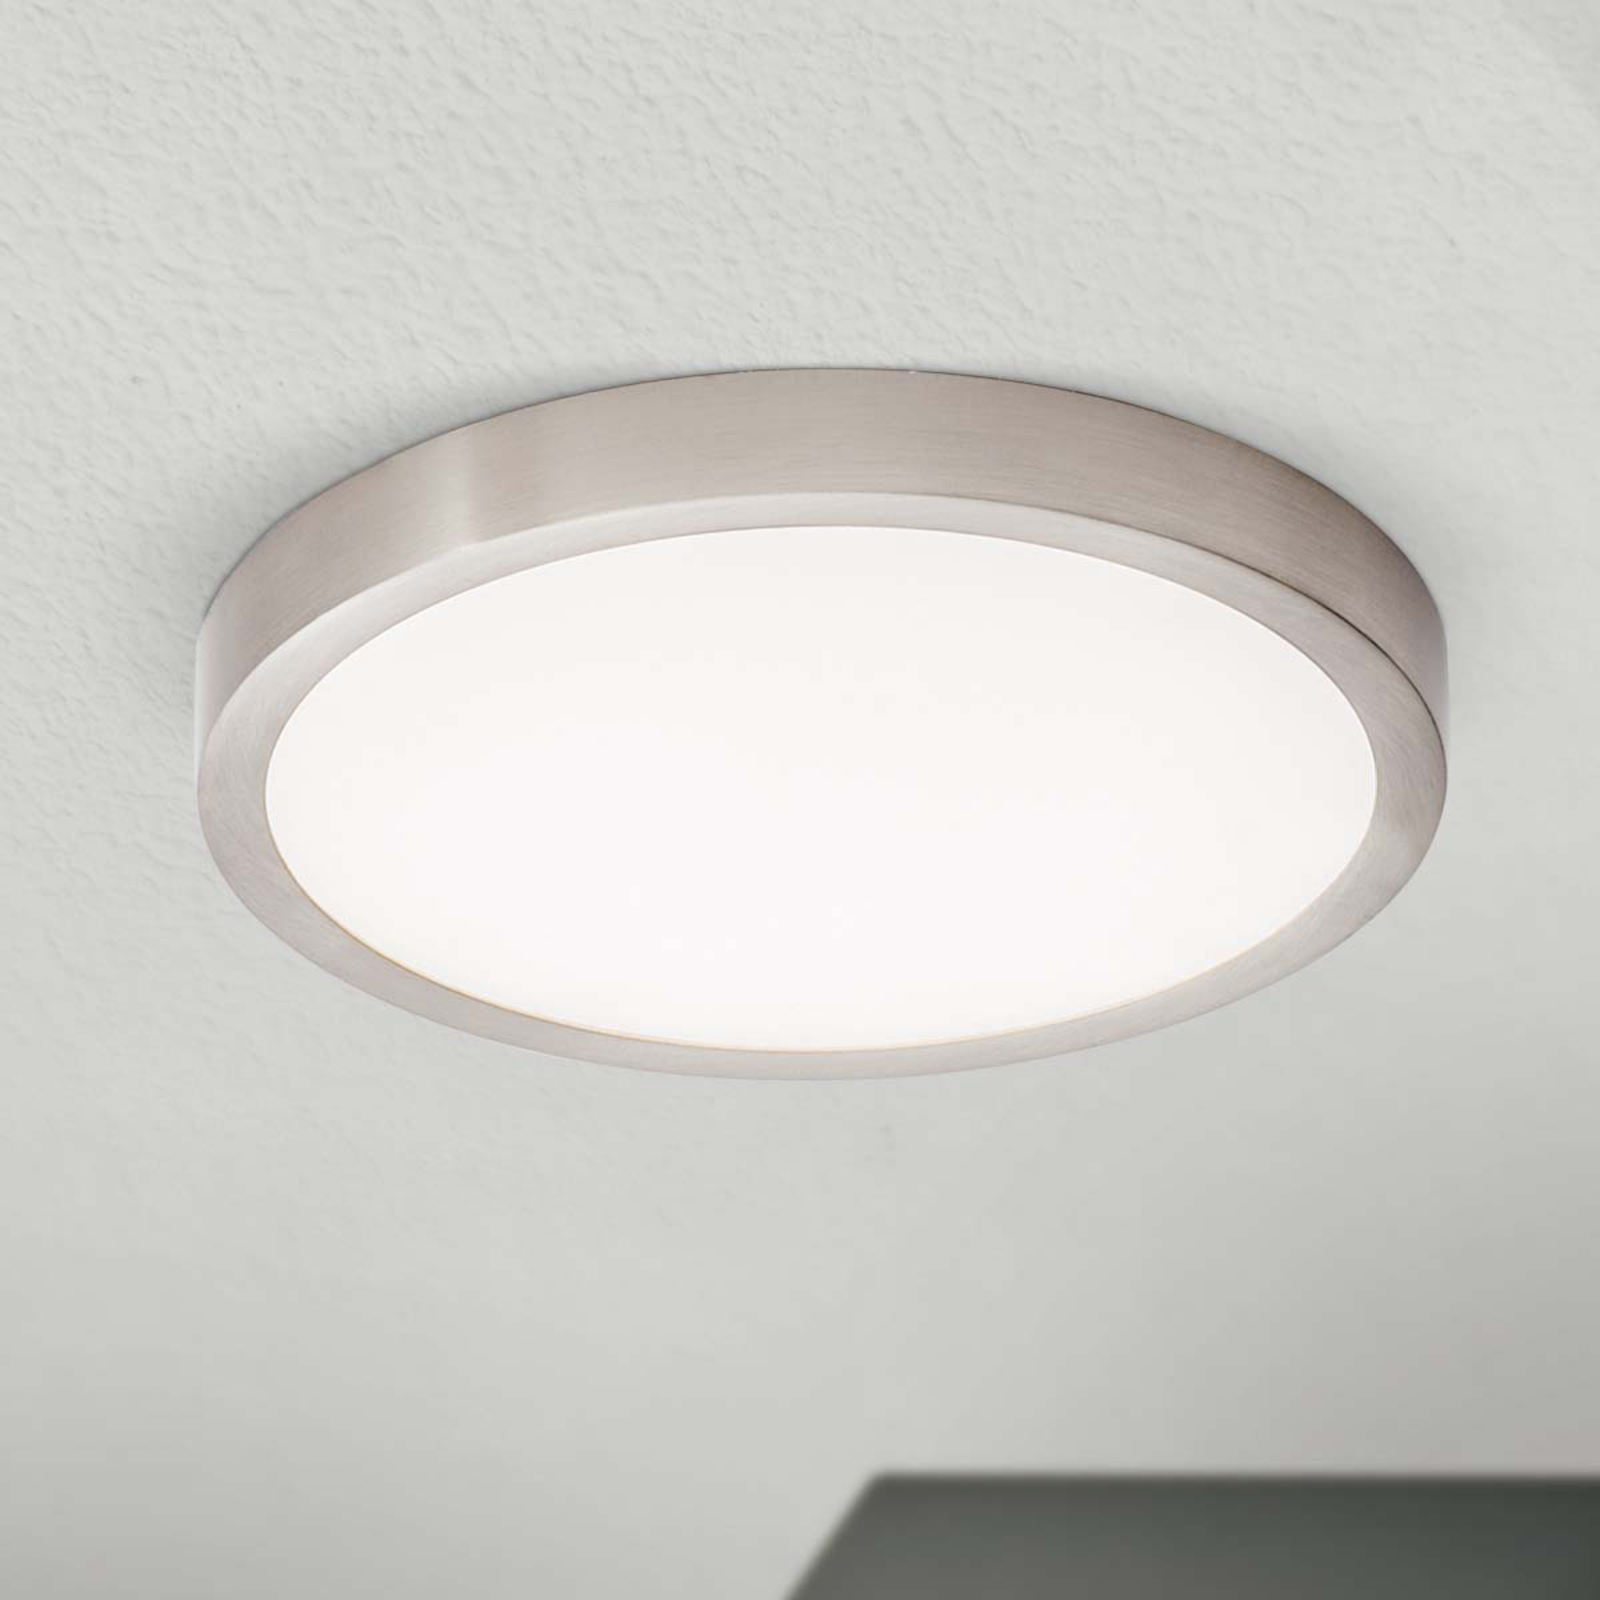 LED stropna svjetiljka Vika, okrugla, mat titan, Ø 23cm